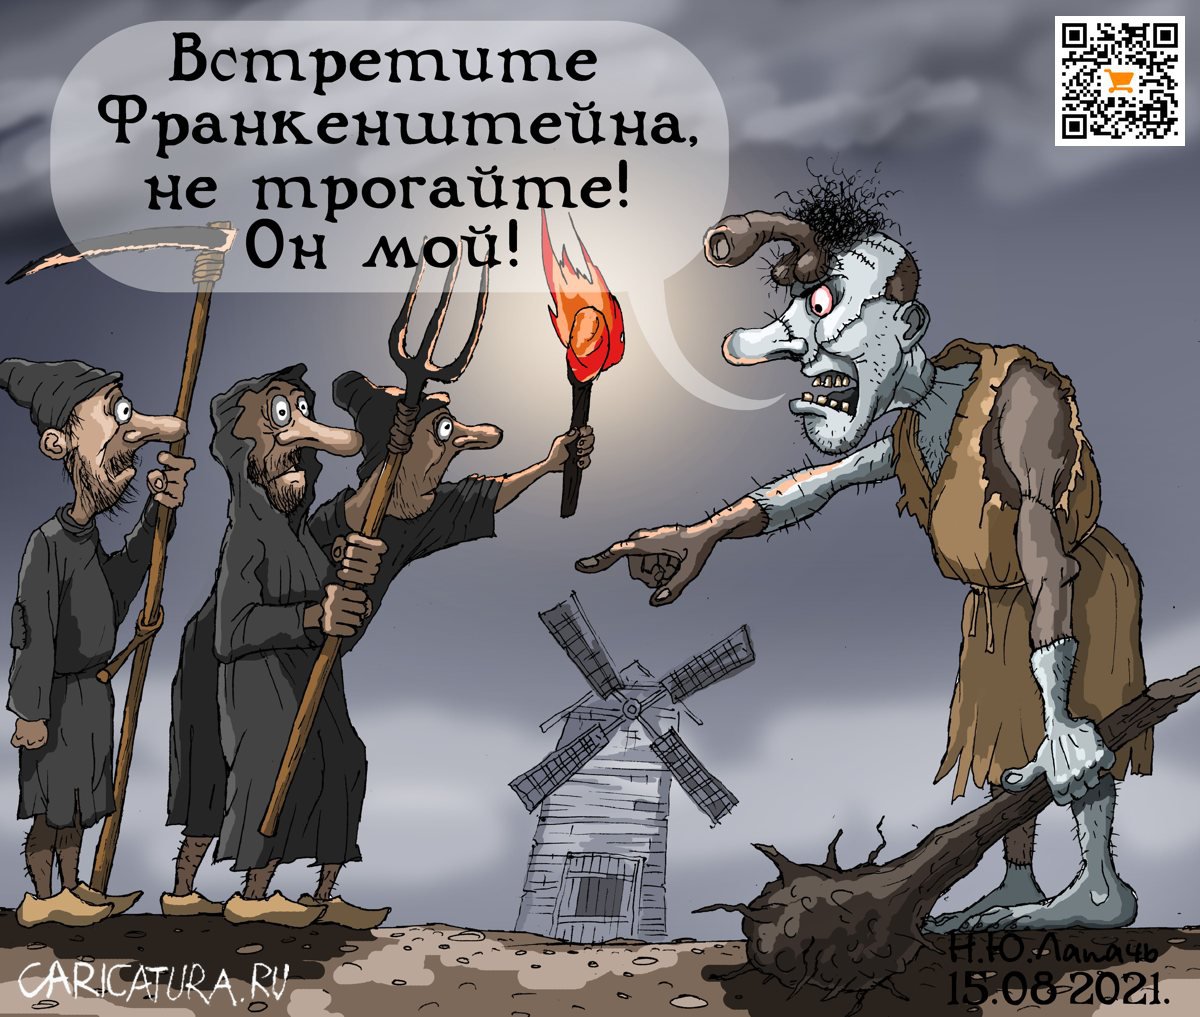 Карикатура "Доктор нужен", Теплый Телогрей